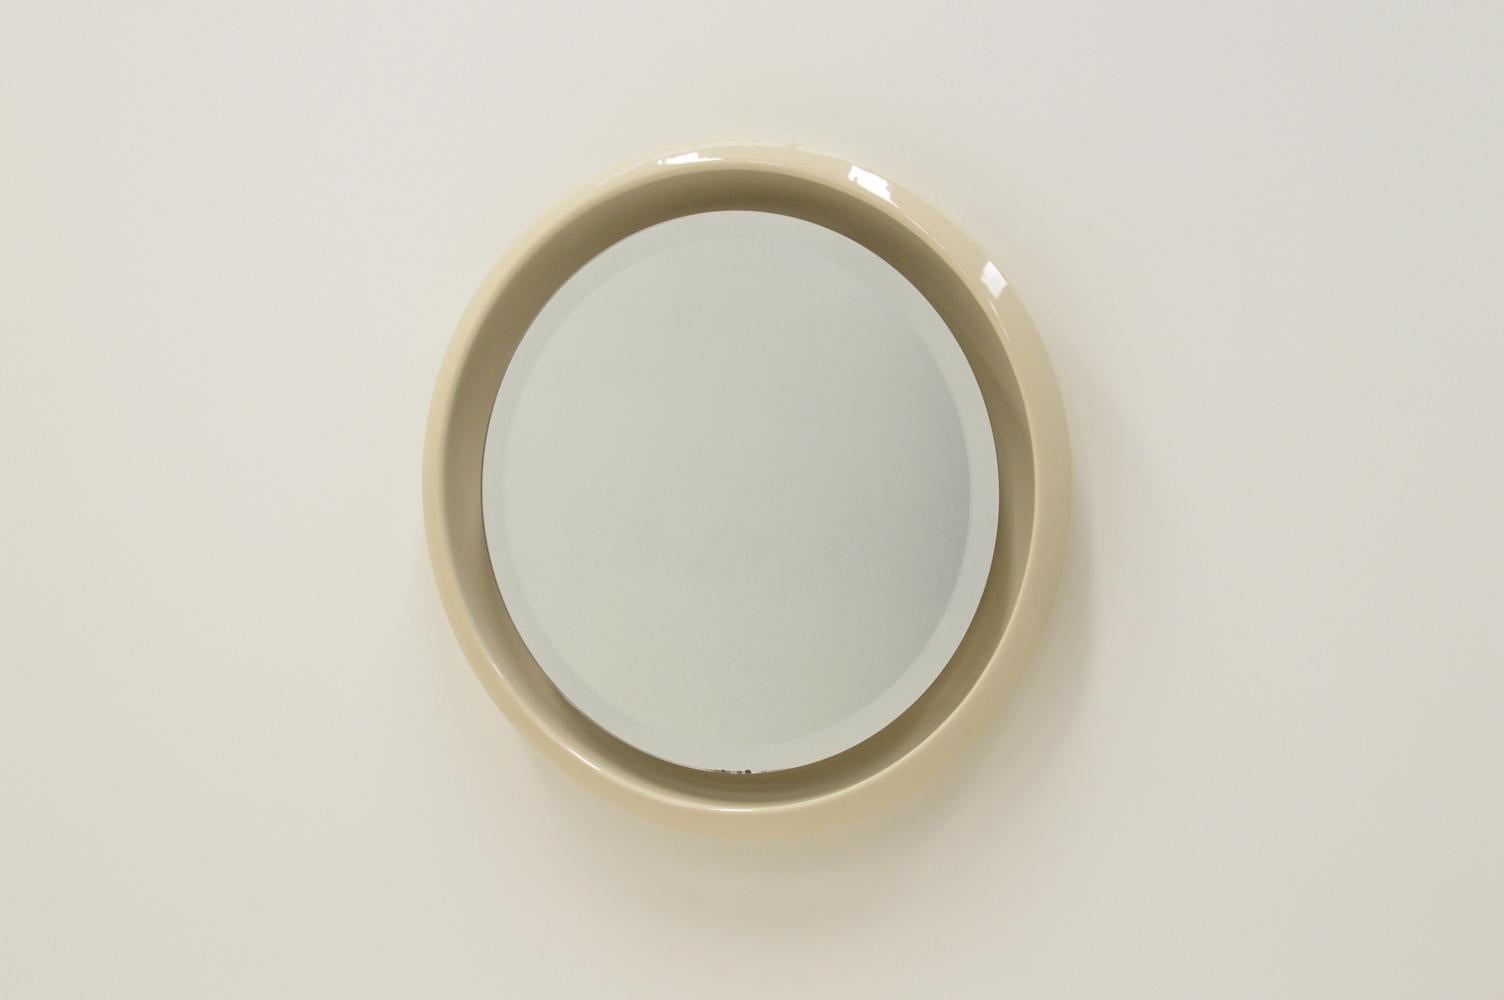 Grand miroir rond en céramique, années 1960. Cadre épais en céramique blanc cassé avec miroir flottant et lumière. La lumière traverse l'espace ouvert entre le cadre et le miroir. L'ancienne TL ronde est remplacée par une TL LED. Il s'agit d'un